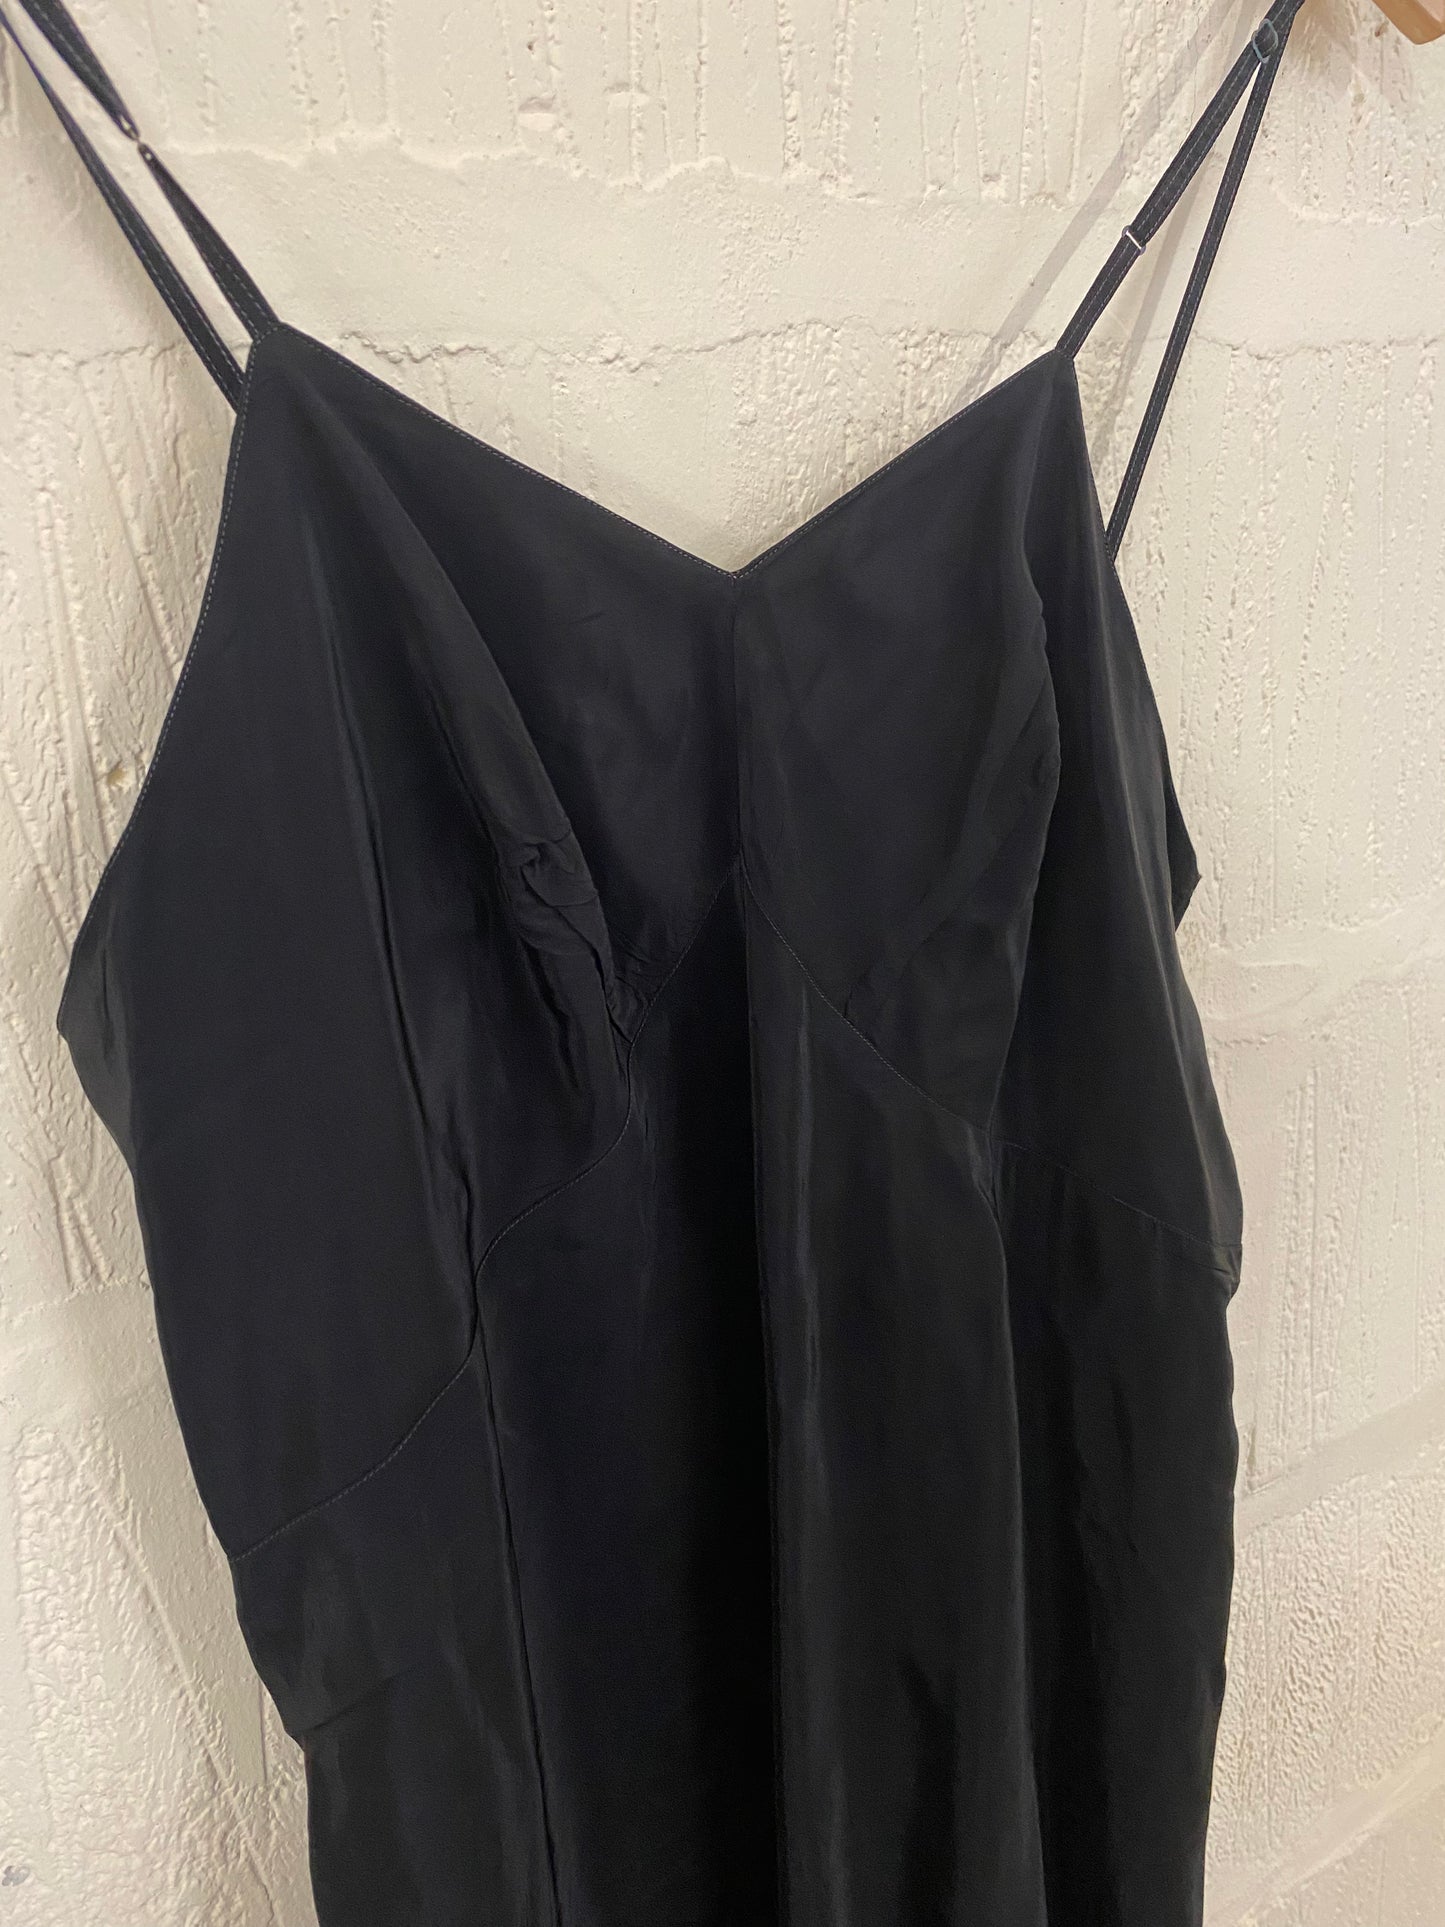 Vintage Black Slip Dress Size 12